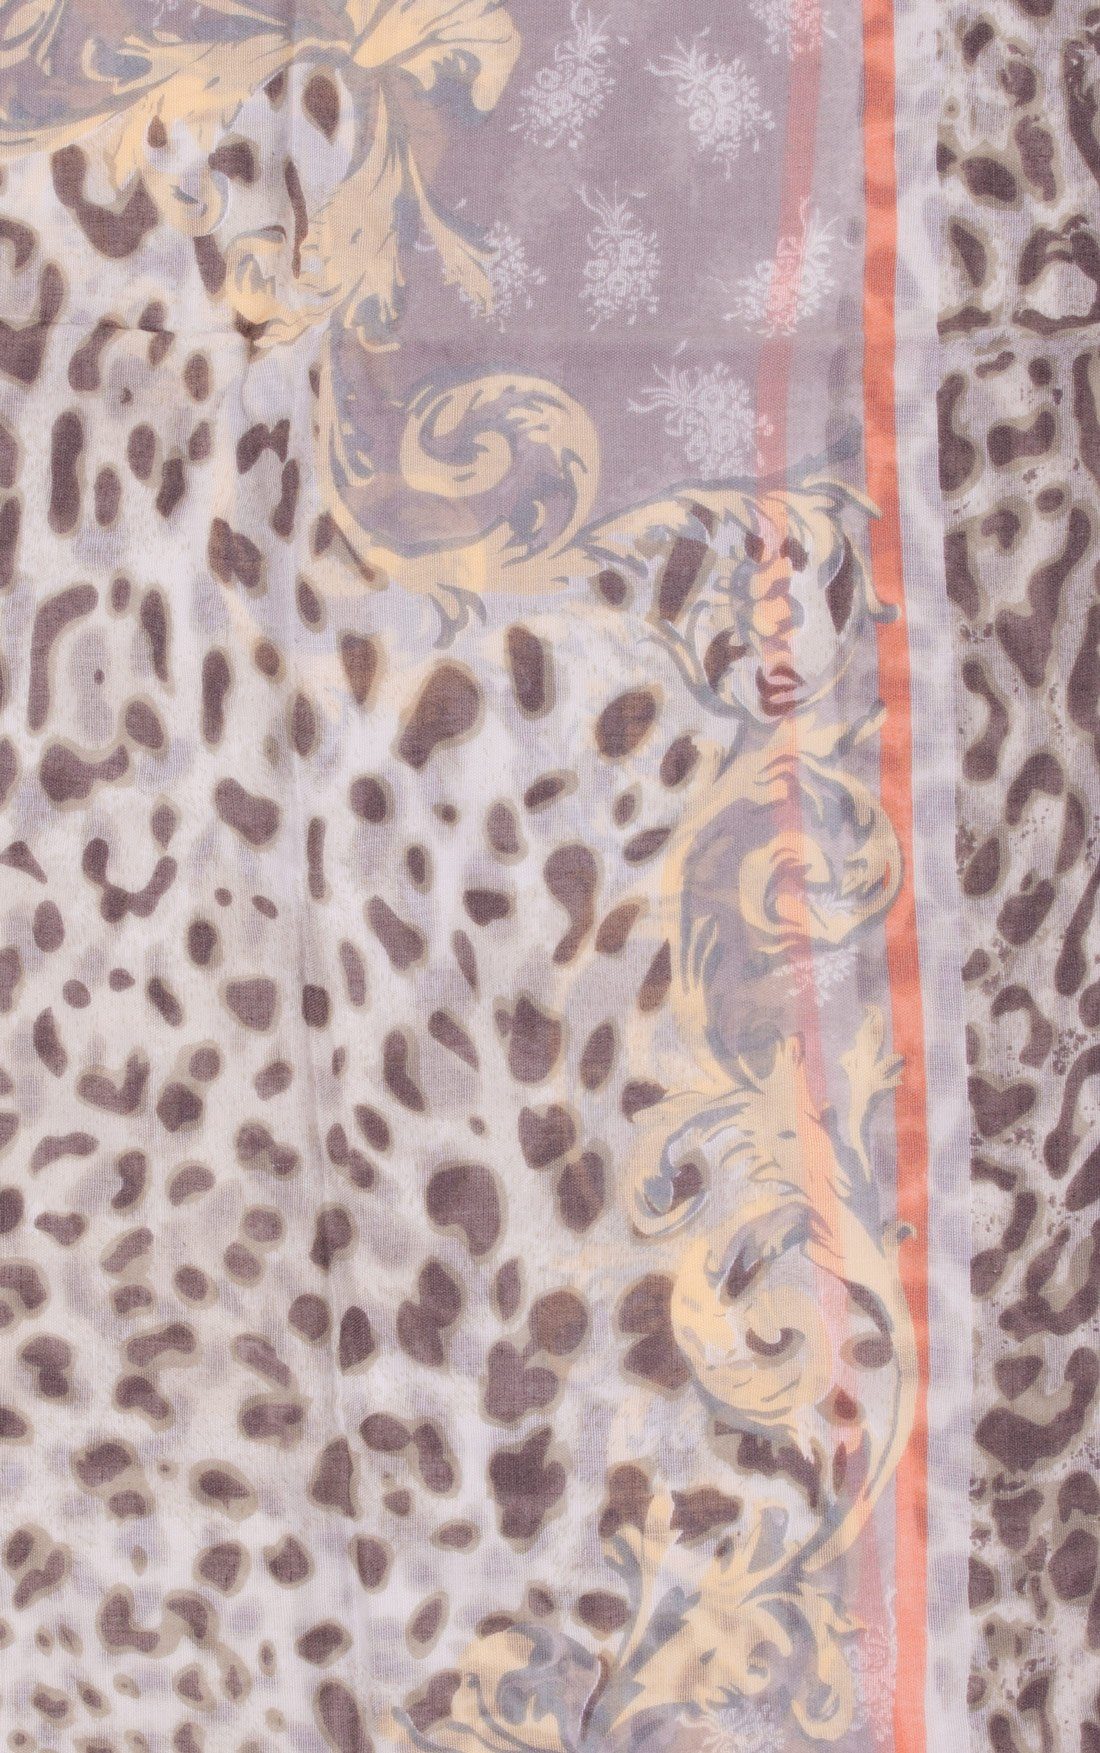 Faera Loop, Damen Schal italienisch-römisches grau Leopardenmuster mehreren und Rundschal weich leicht Farben Loopschal